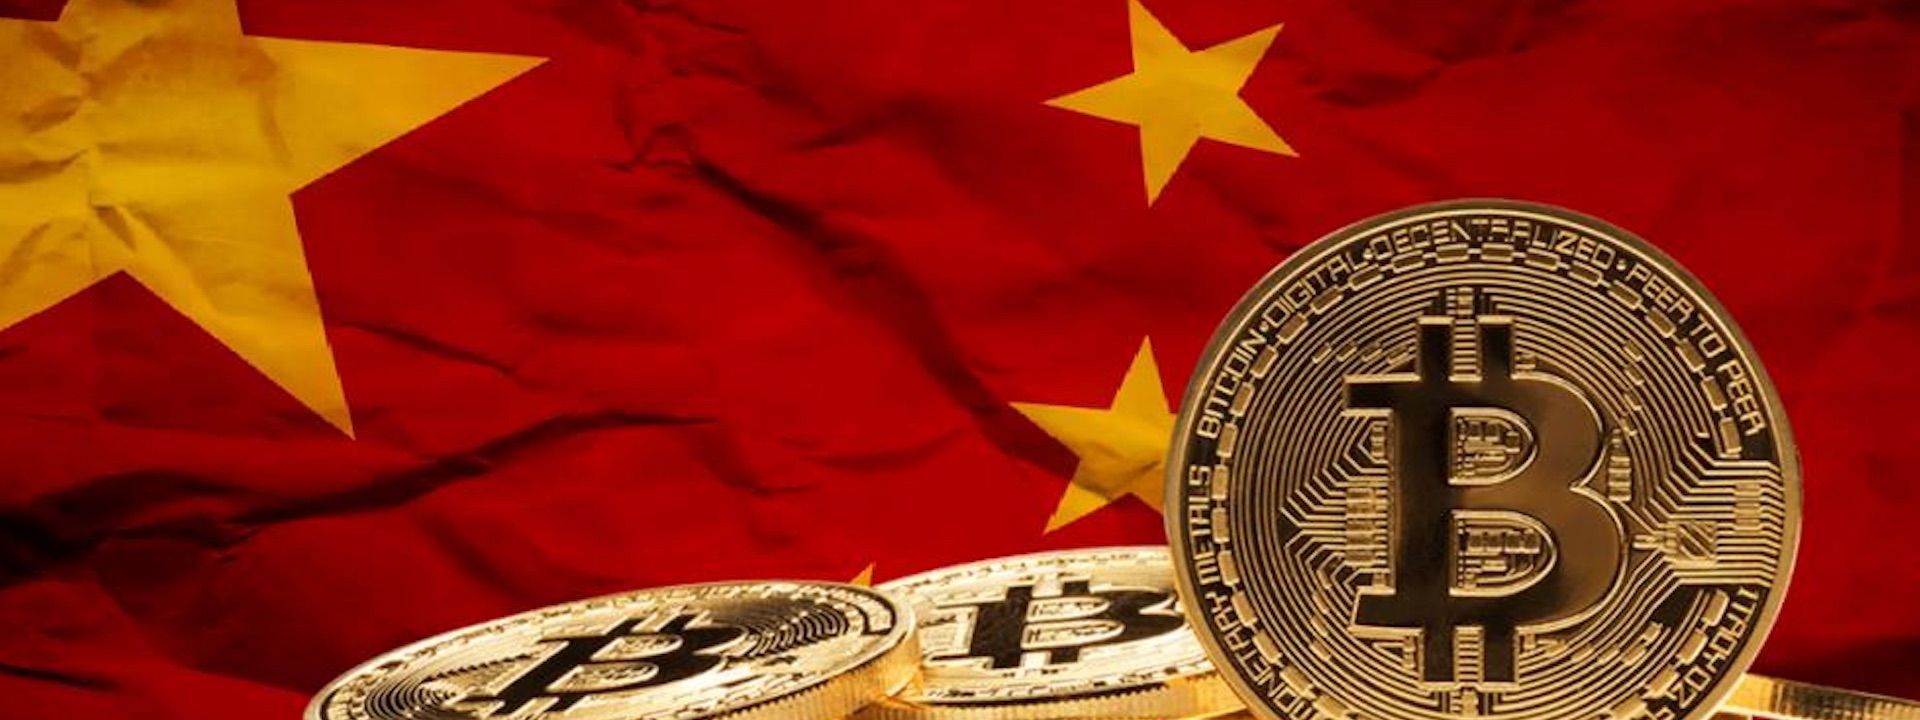 Trung Quốc công nhận Bitcoin và crypto là phương thức thanh toán hợp pháp